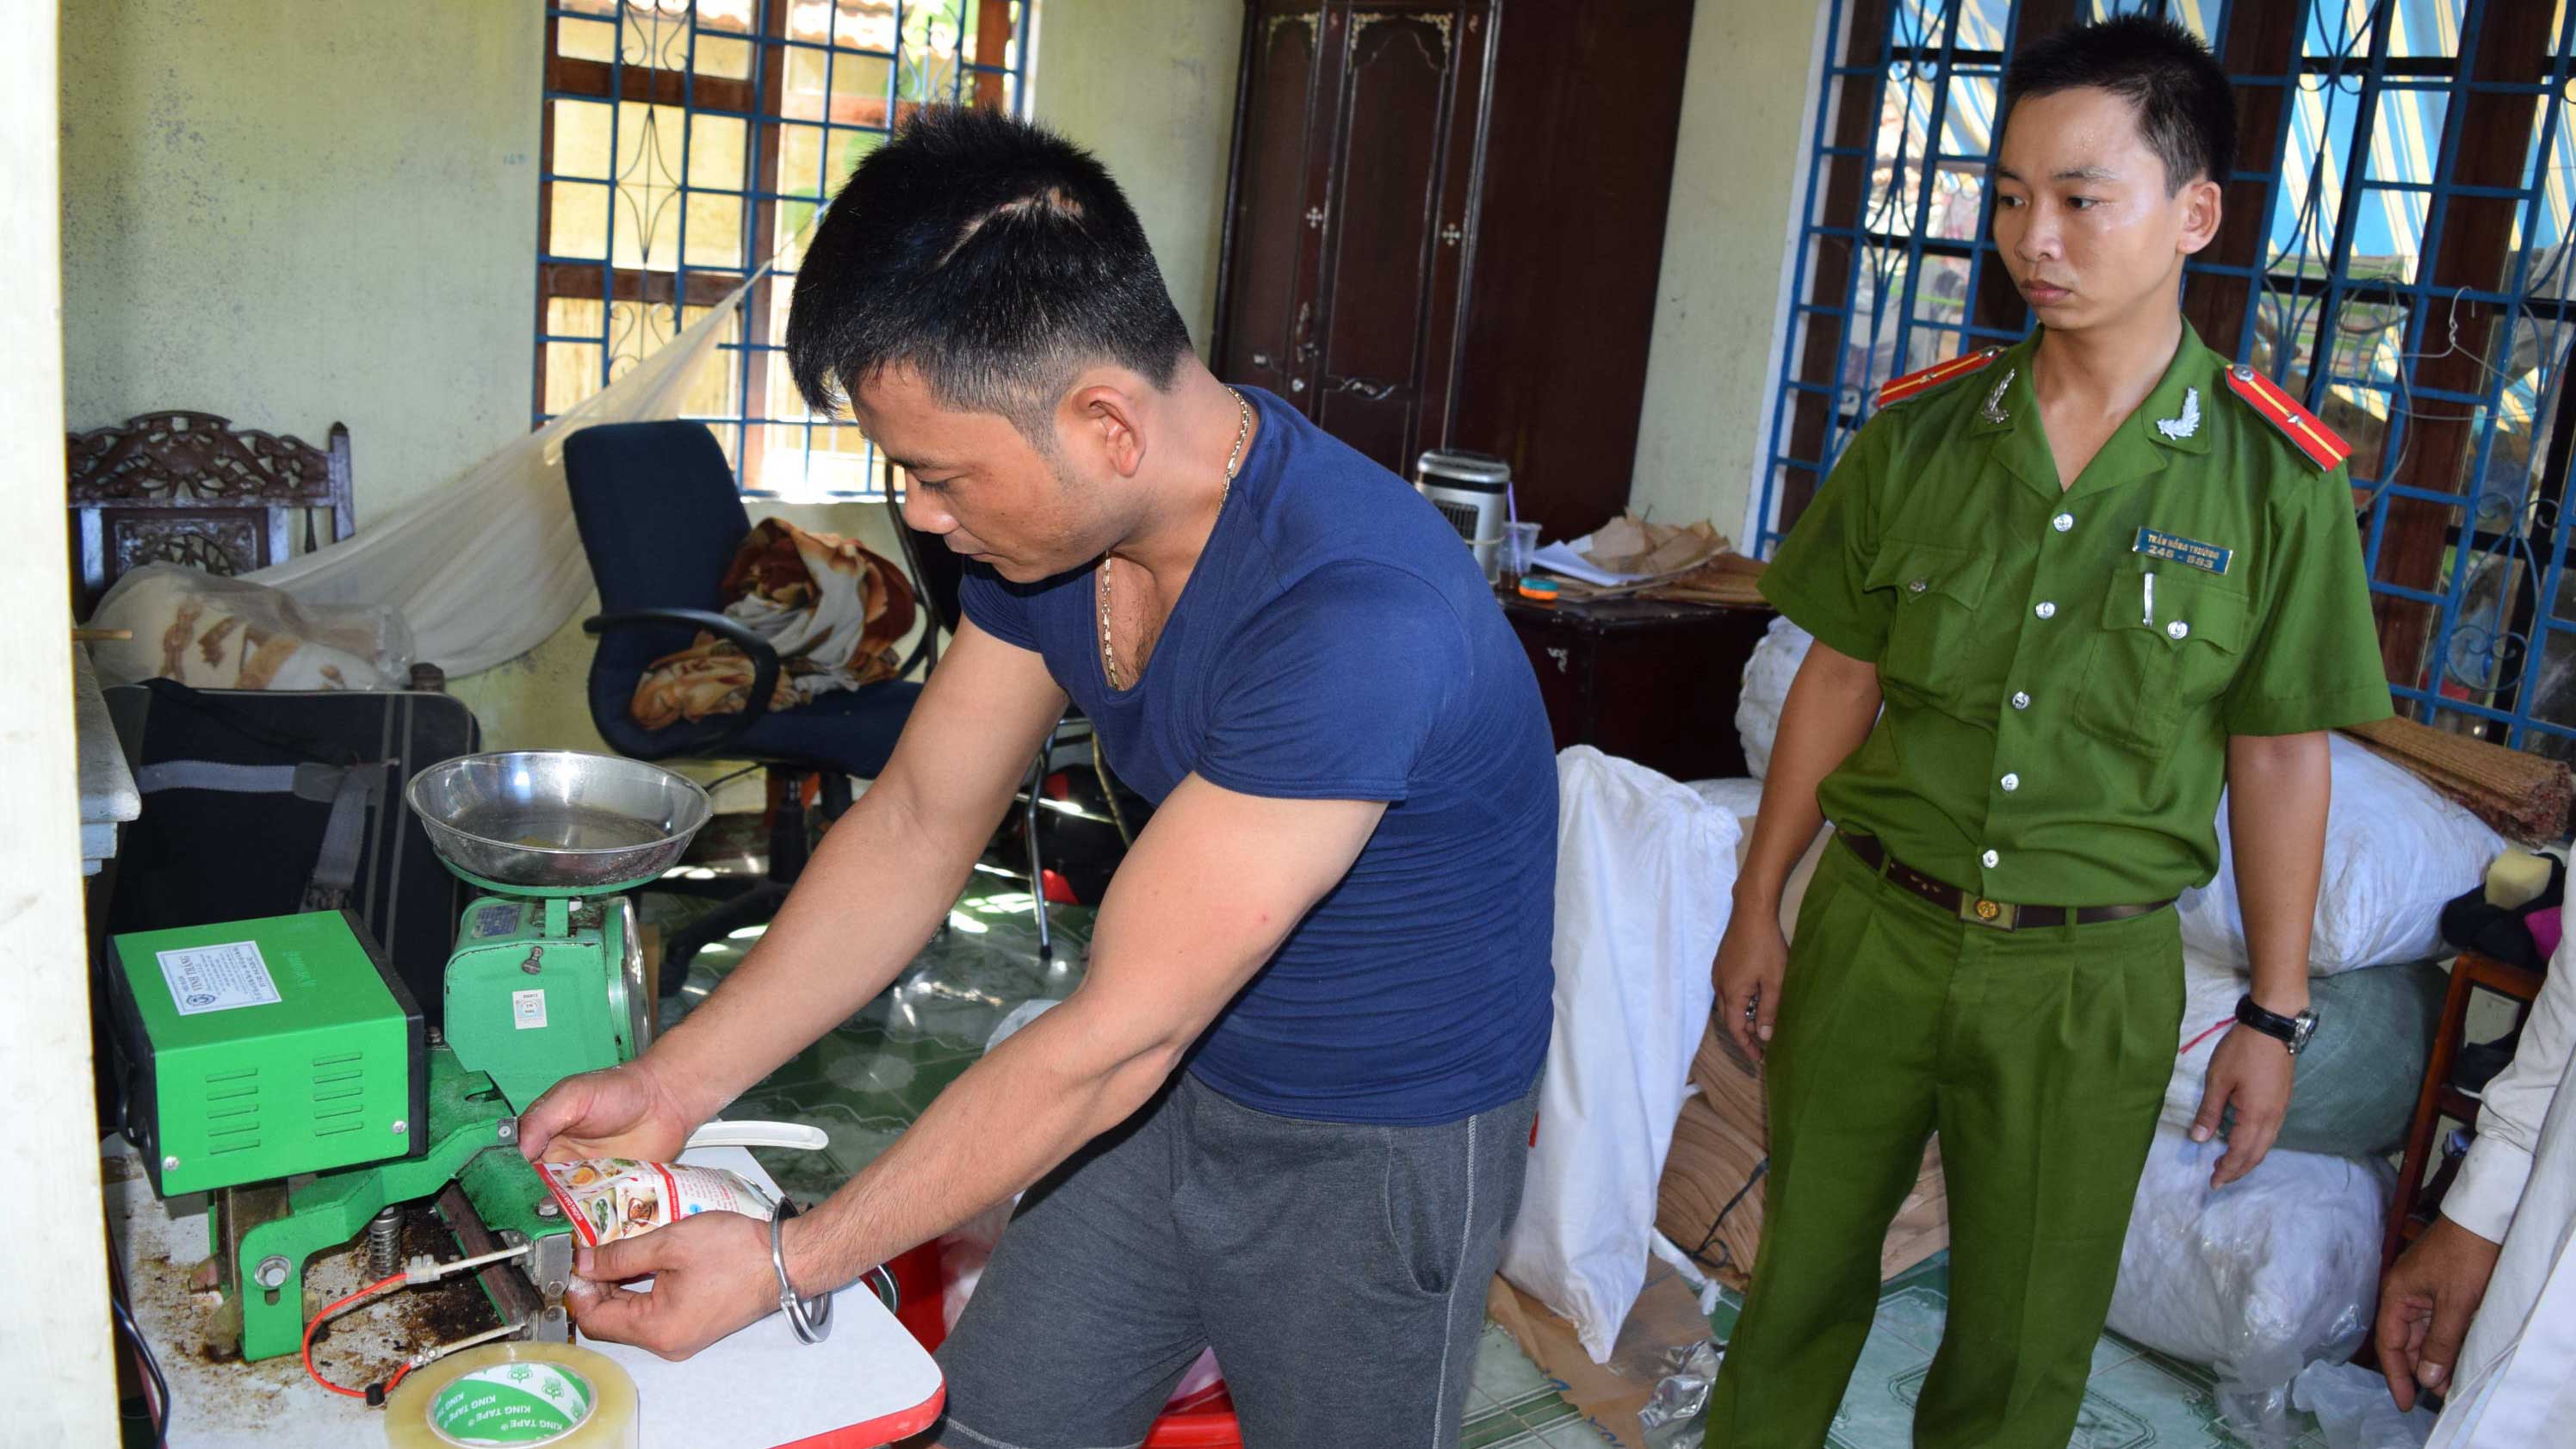 Lực lượng công an kiểm tra và bắt quả tang một cơ sở sản xuất bột ngọt giả tại nhà ở Huế - Ảnh: Ngô Phương